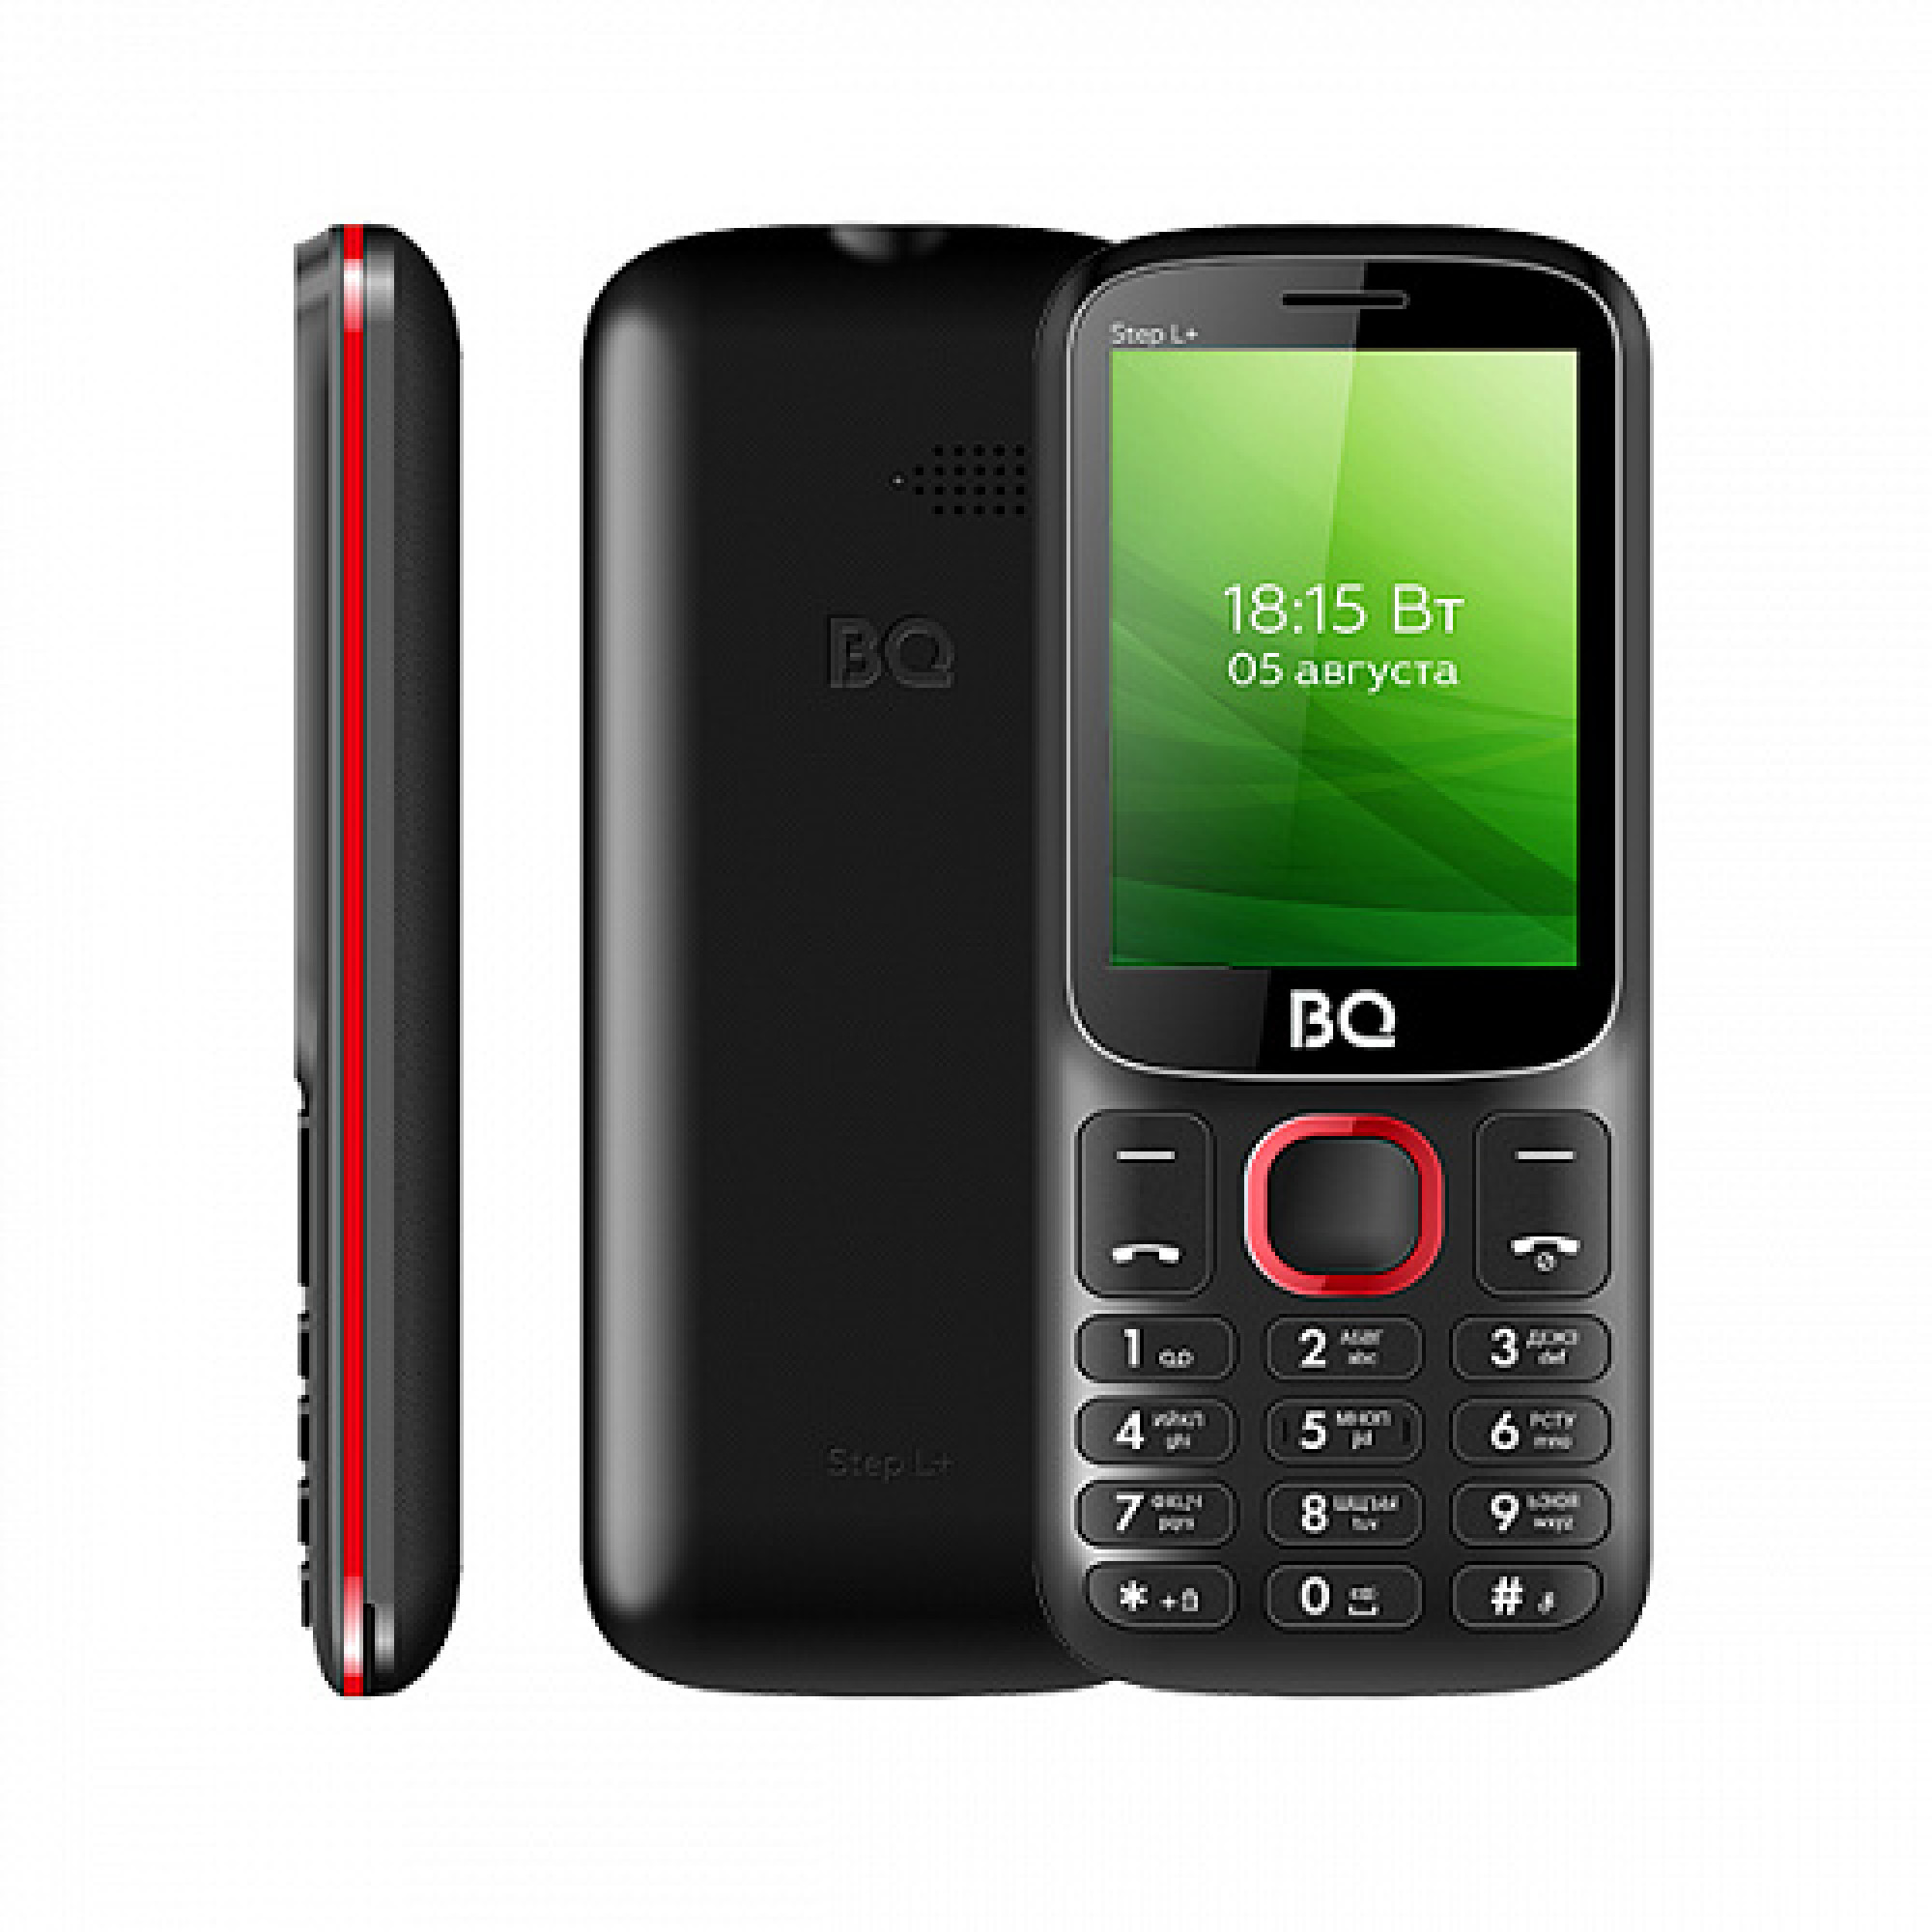 Мобильный телефон BQ BQ-2440 Step L+ (черный/красный)